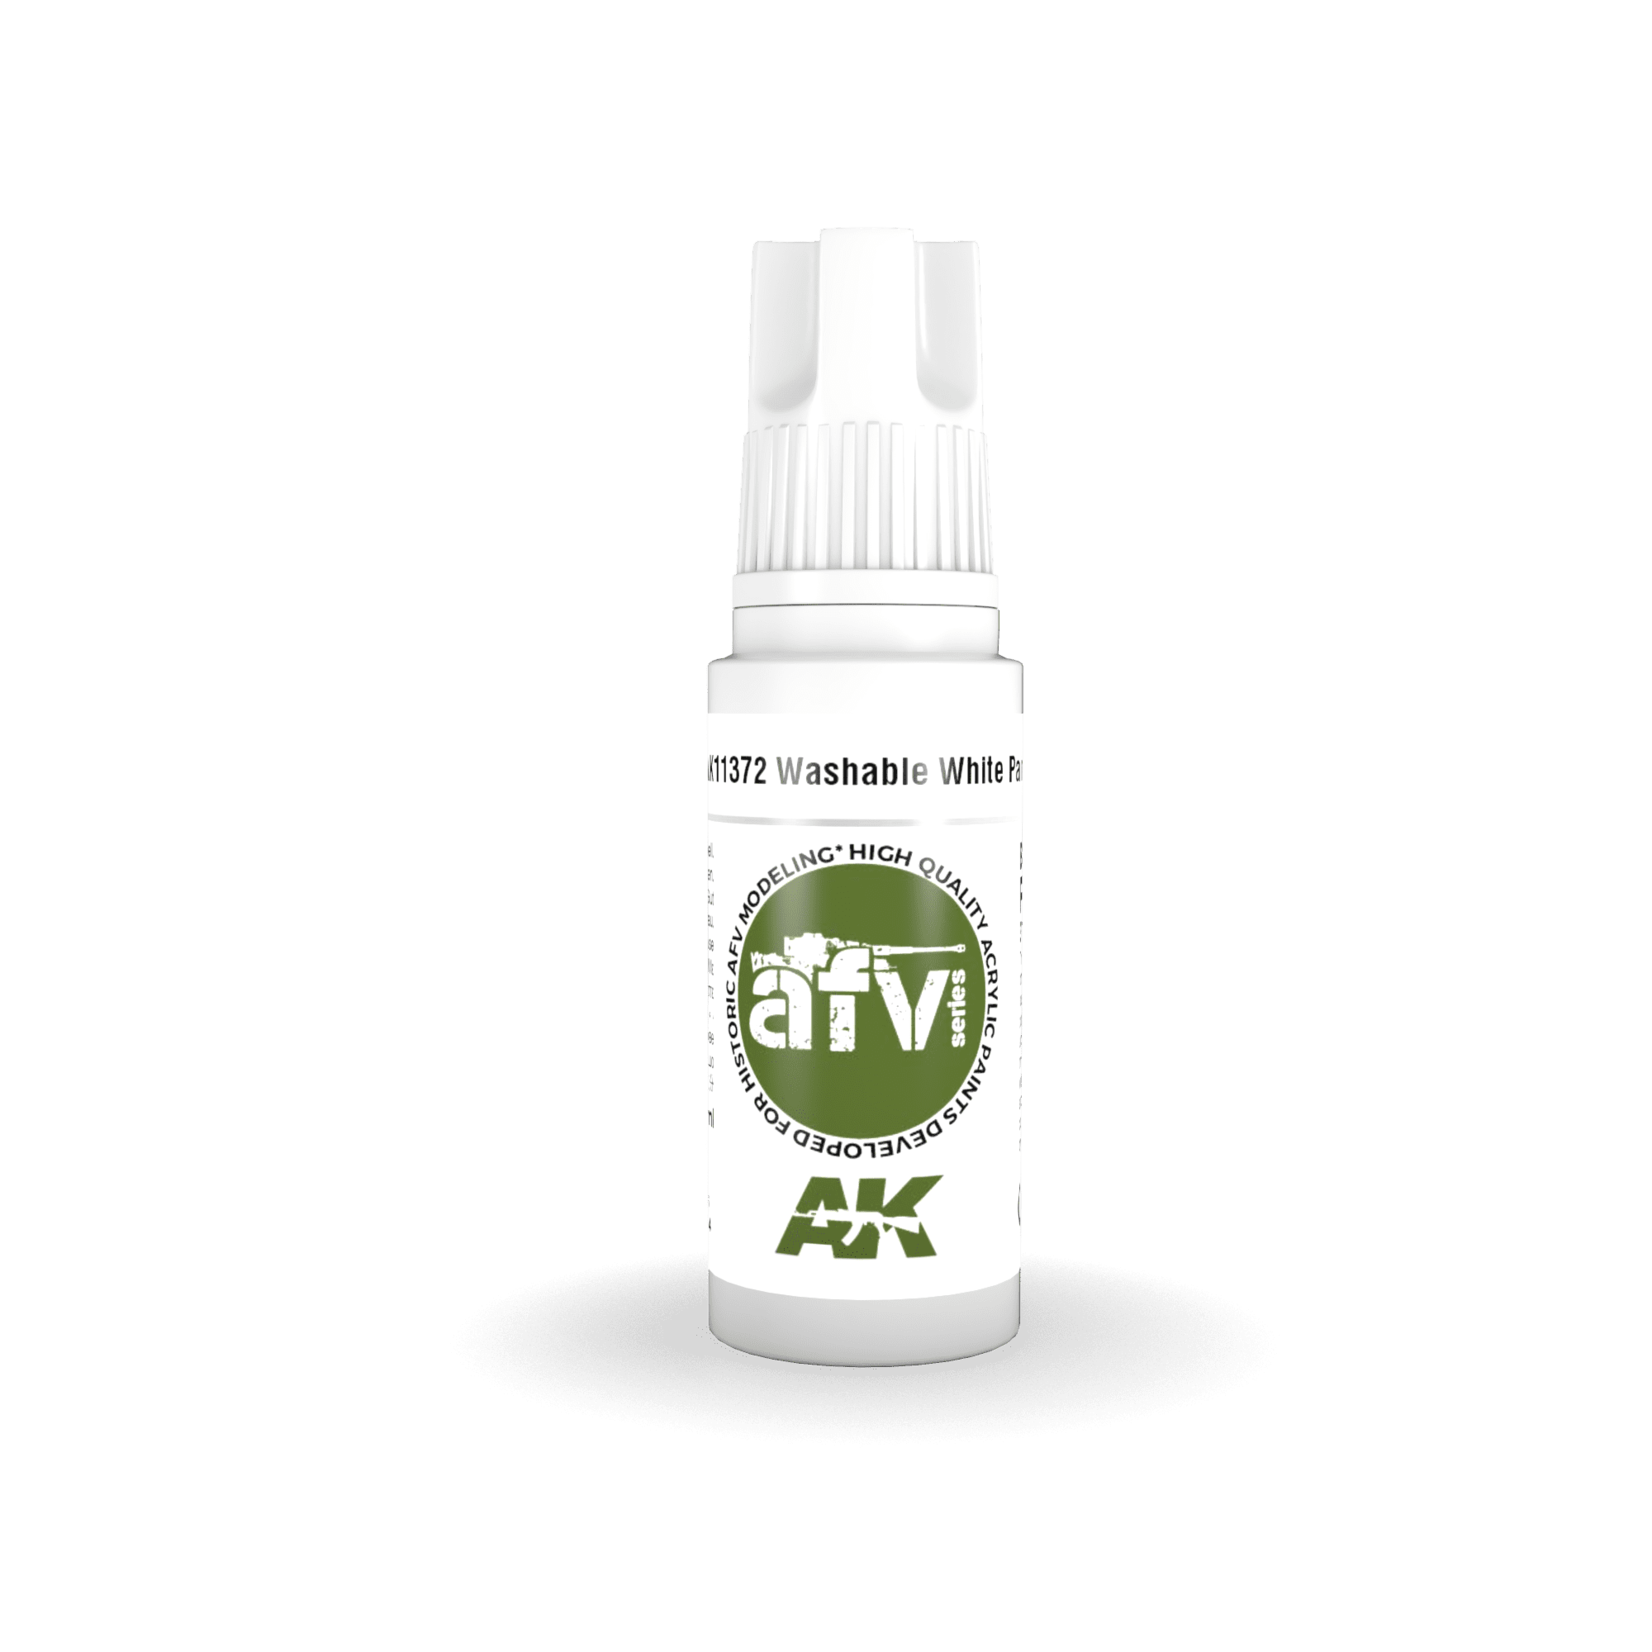 AK Interactive AK11372 3G AFV Washable White Paint 17ml